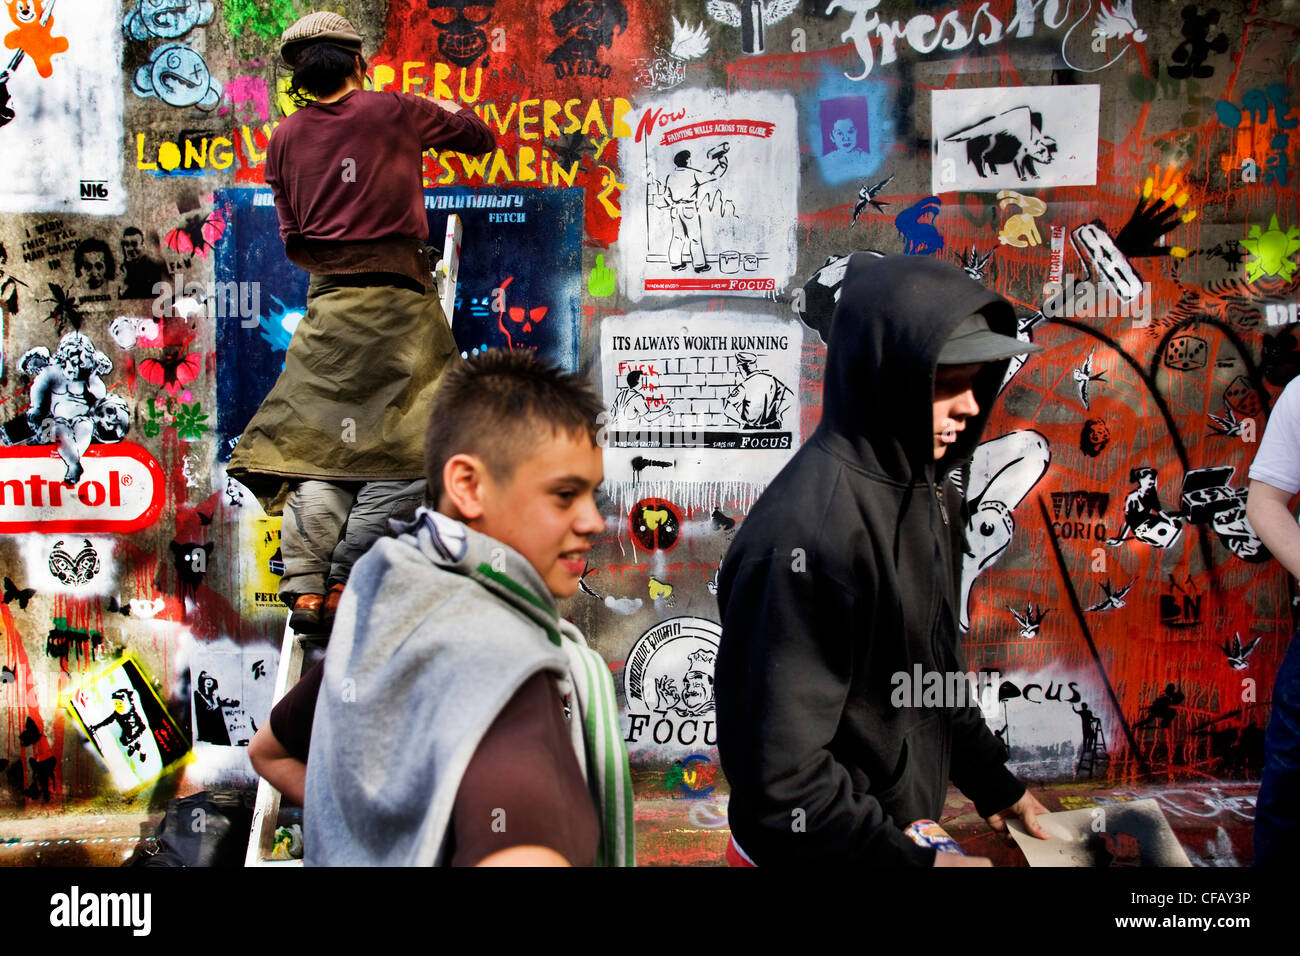 Graffiti-Kunst auf dem Dosen-Festival von Banksy erscheinen mit der Arbeit von 29 anderen Künstlern in einem Tunnel in Waterloo, London. Stockfoto